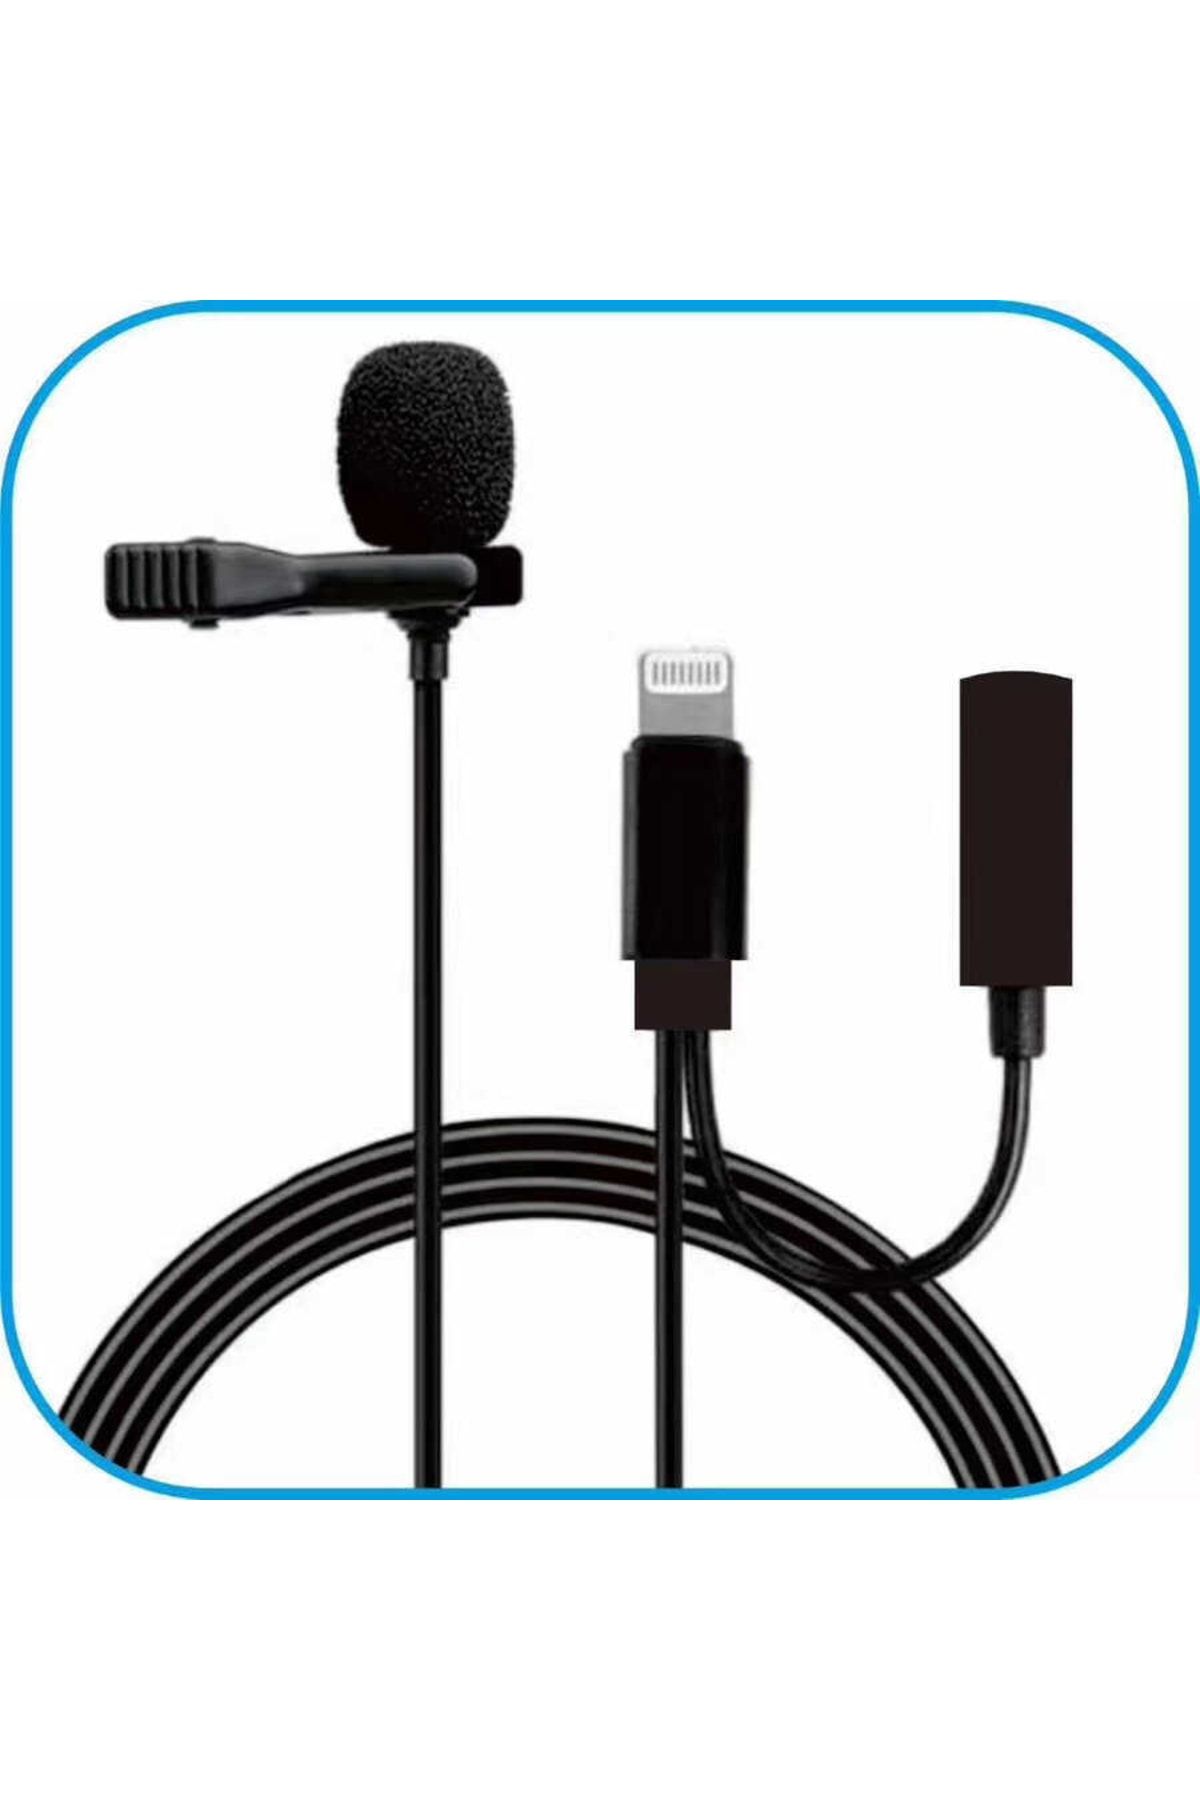 UnDePlus Ms-uc568 Yaka Klipsli Gürültü Önleyici Lightning Girişli Youtuber Canlı Yayın Yaka Mikrofonu